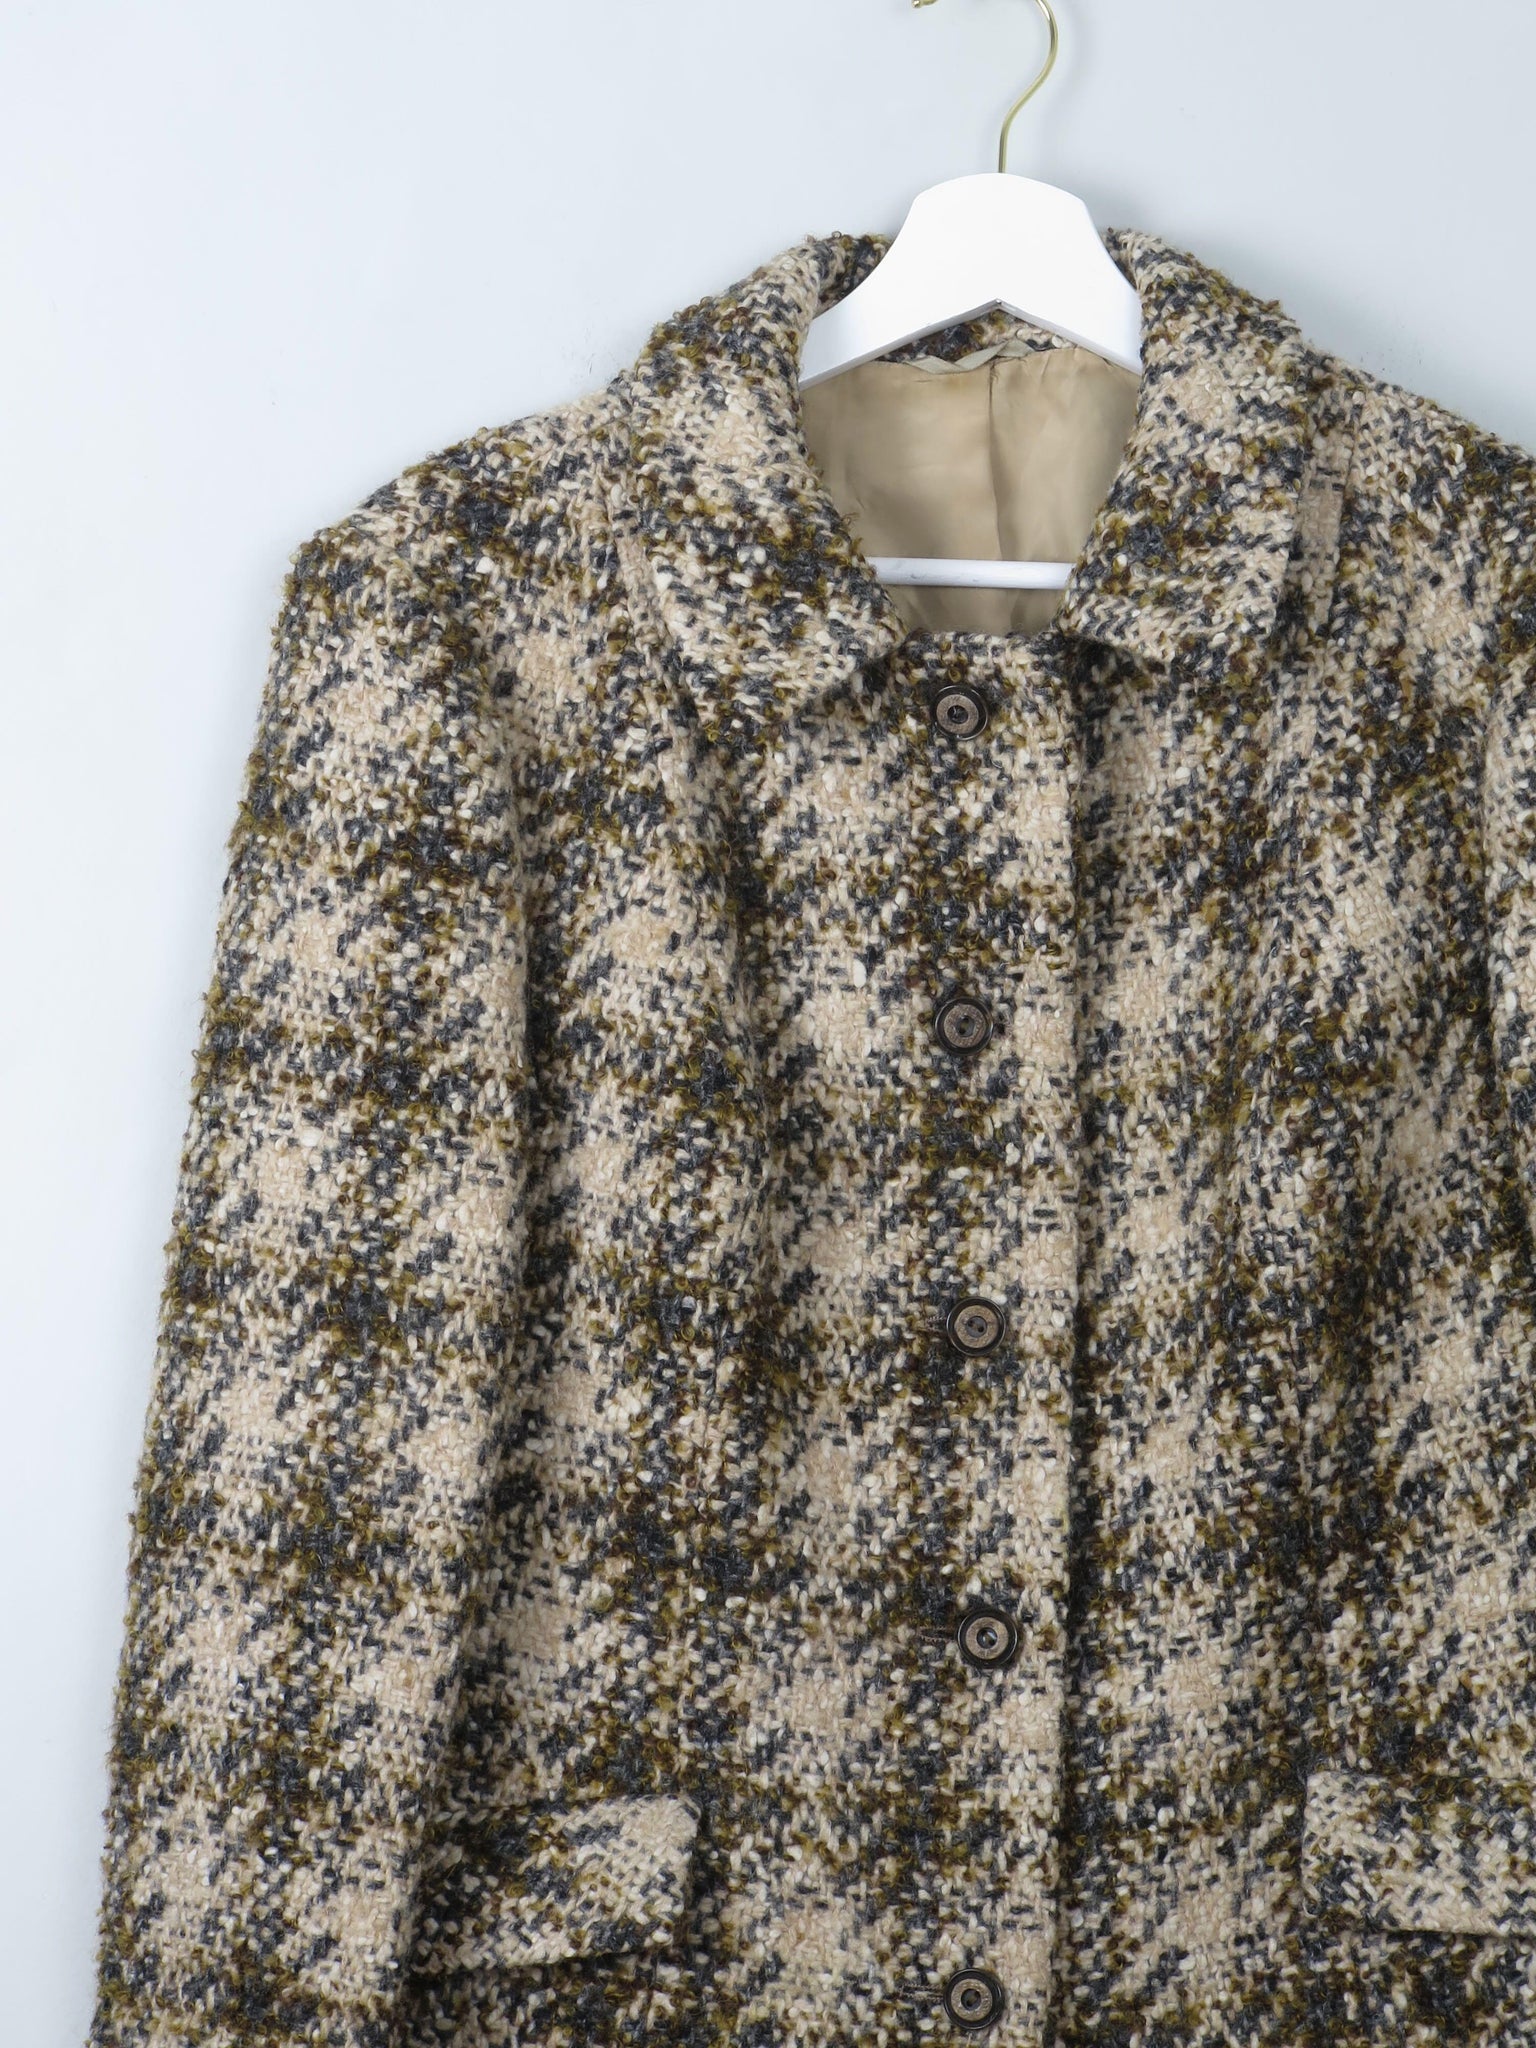 Women's Cream Vintage Tweed Jacket 1960s 12/14 - The Harlequin